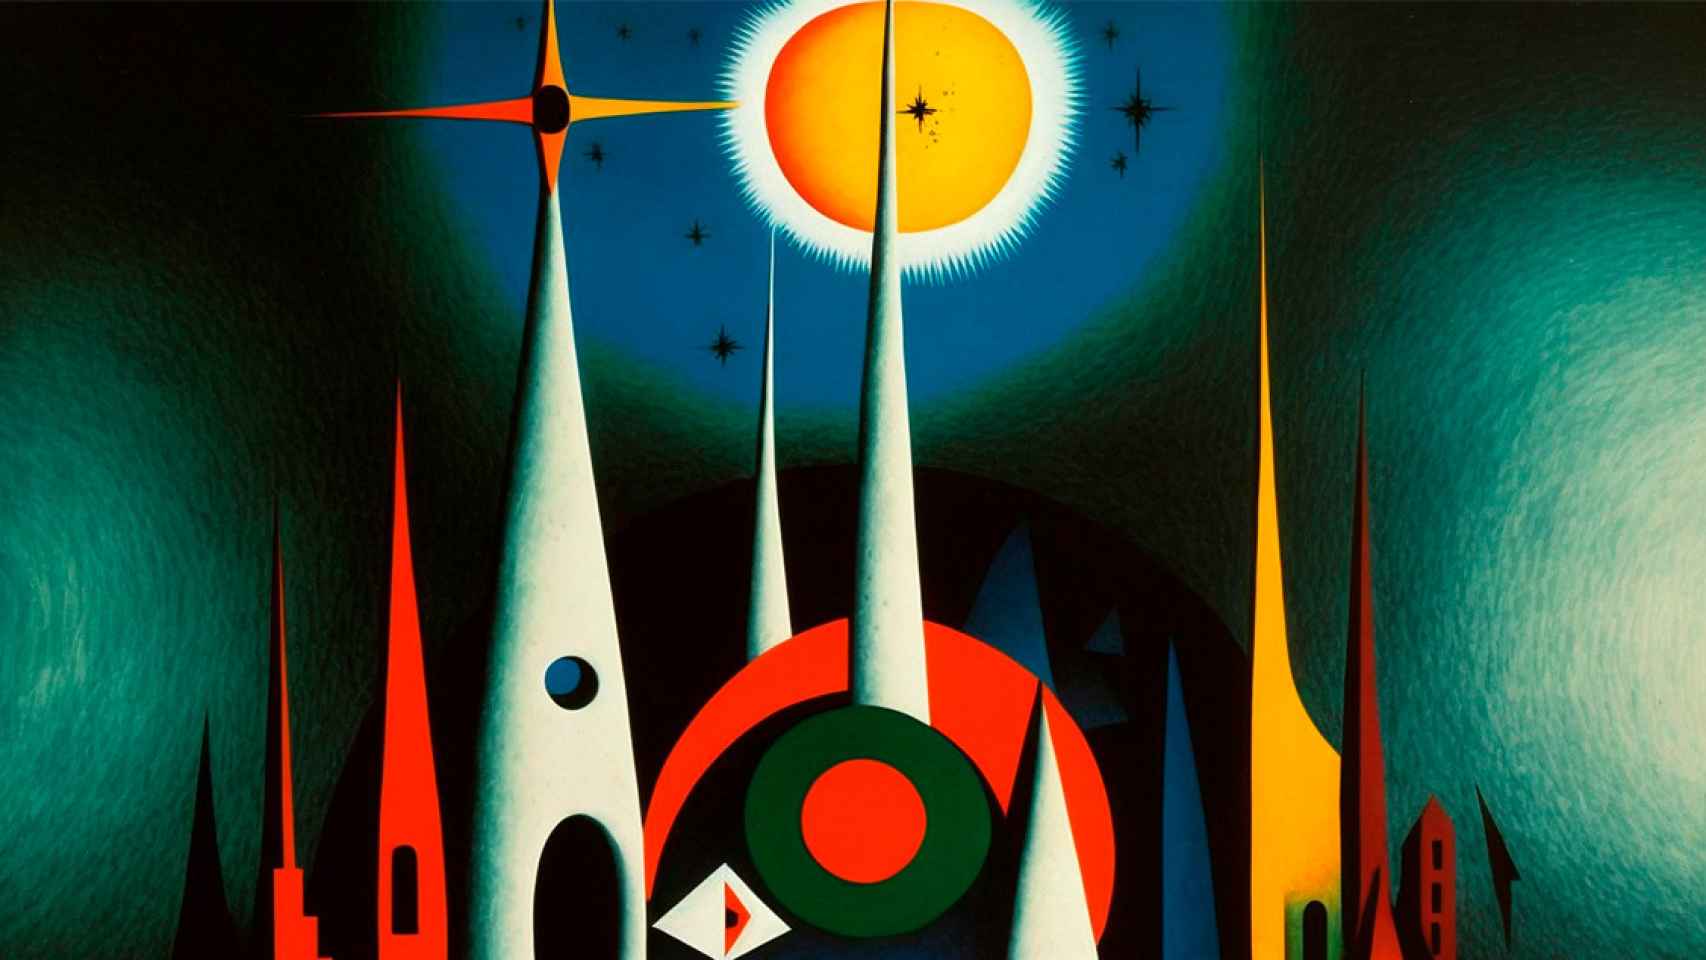 Un cuadro de la Sagrada Familia hecho por Joan Miró, una imagen generada por Crónica Global a través de la inteligencia artificial Midjourney, una de las herramientas que ponen en cuestión el futuro de los artistas visuales / MIDJOURNEY - CG